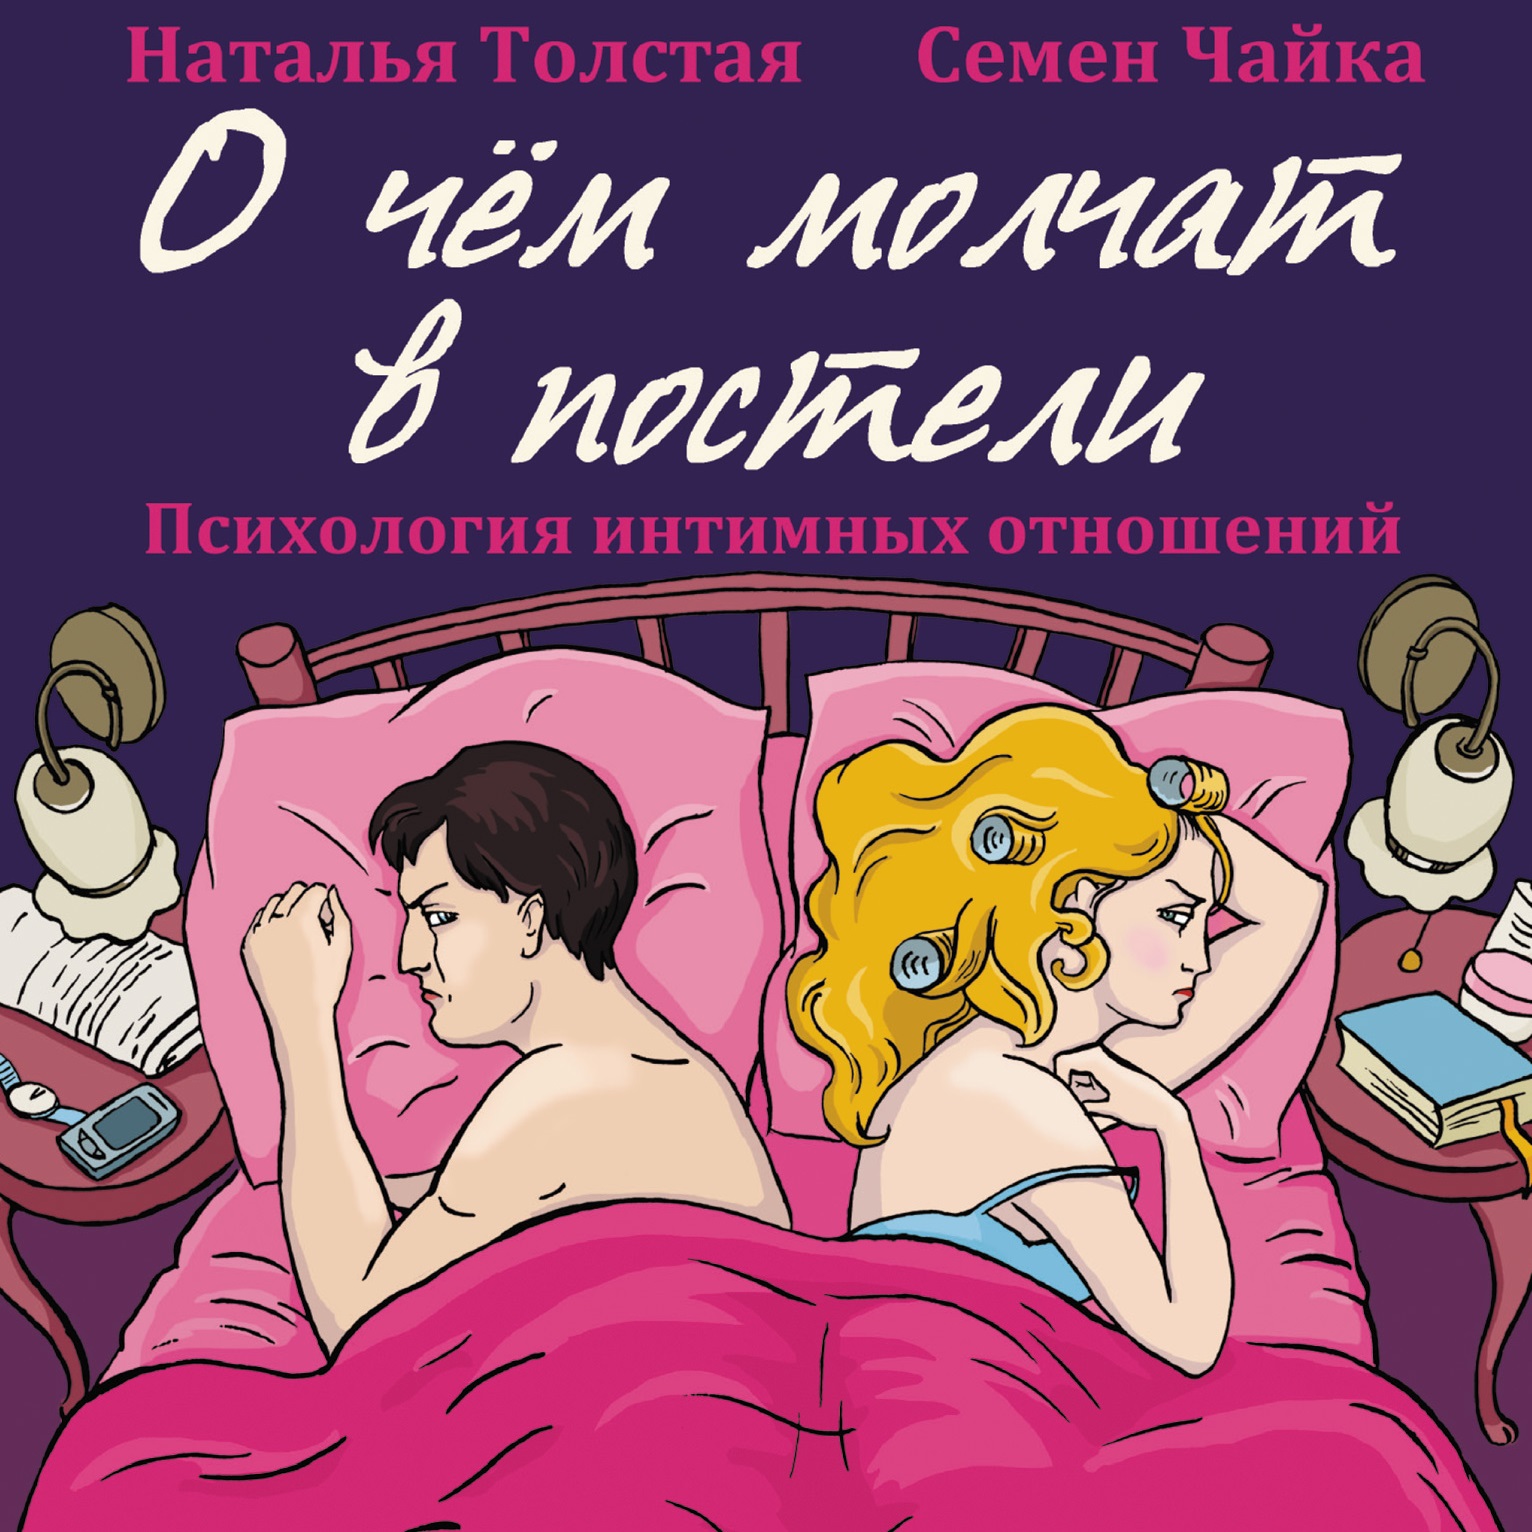 О чем молчат женщины в постели? - 36 ответов на форуме ecomamochka.ru ()